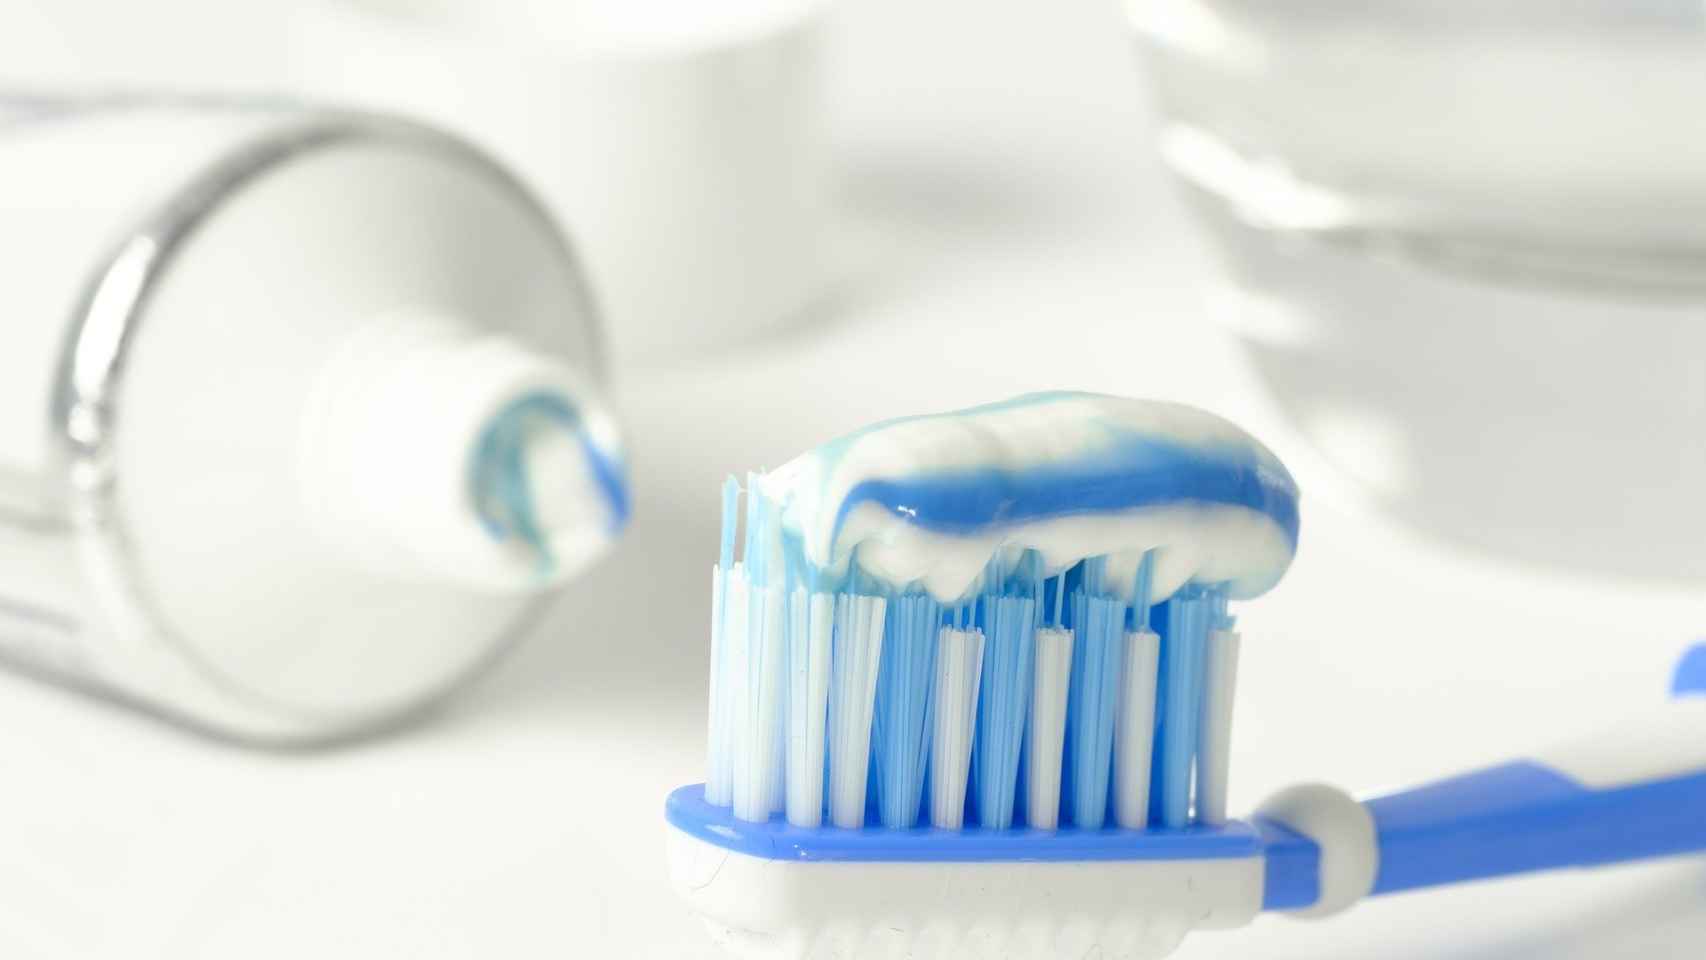 Cómo reciclar tu cepillo de dientes